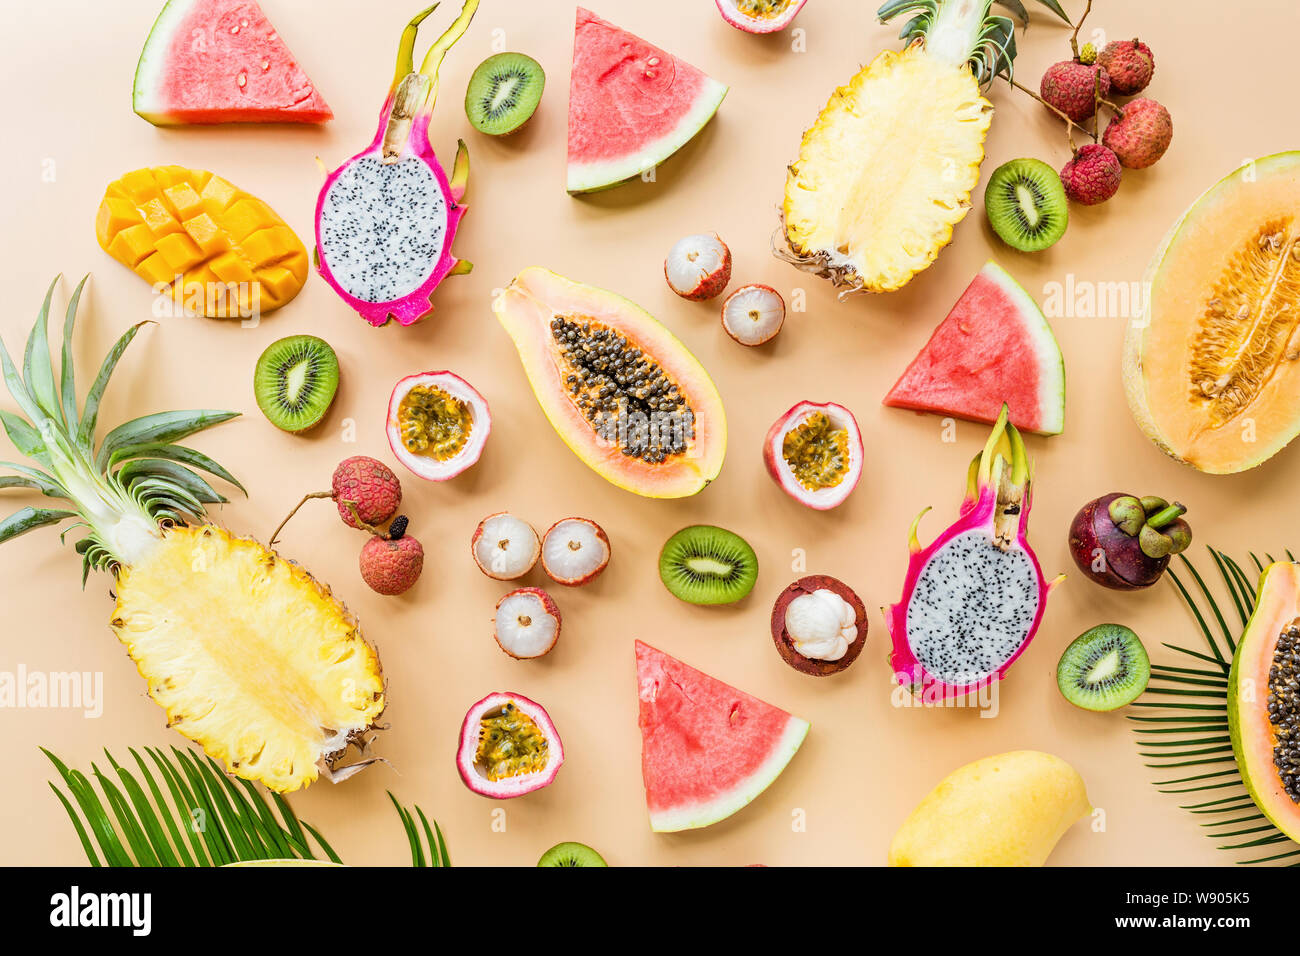 Frische exotische Früchte und tropischen Palmen Blätter auf pastellorange Hintergrund - Papaya, Mango, Ananas, Passionsfrucht, Dragon Obst, Trauben, lichee, Kiwi Stockfoto